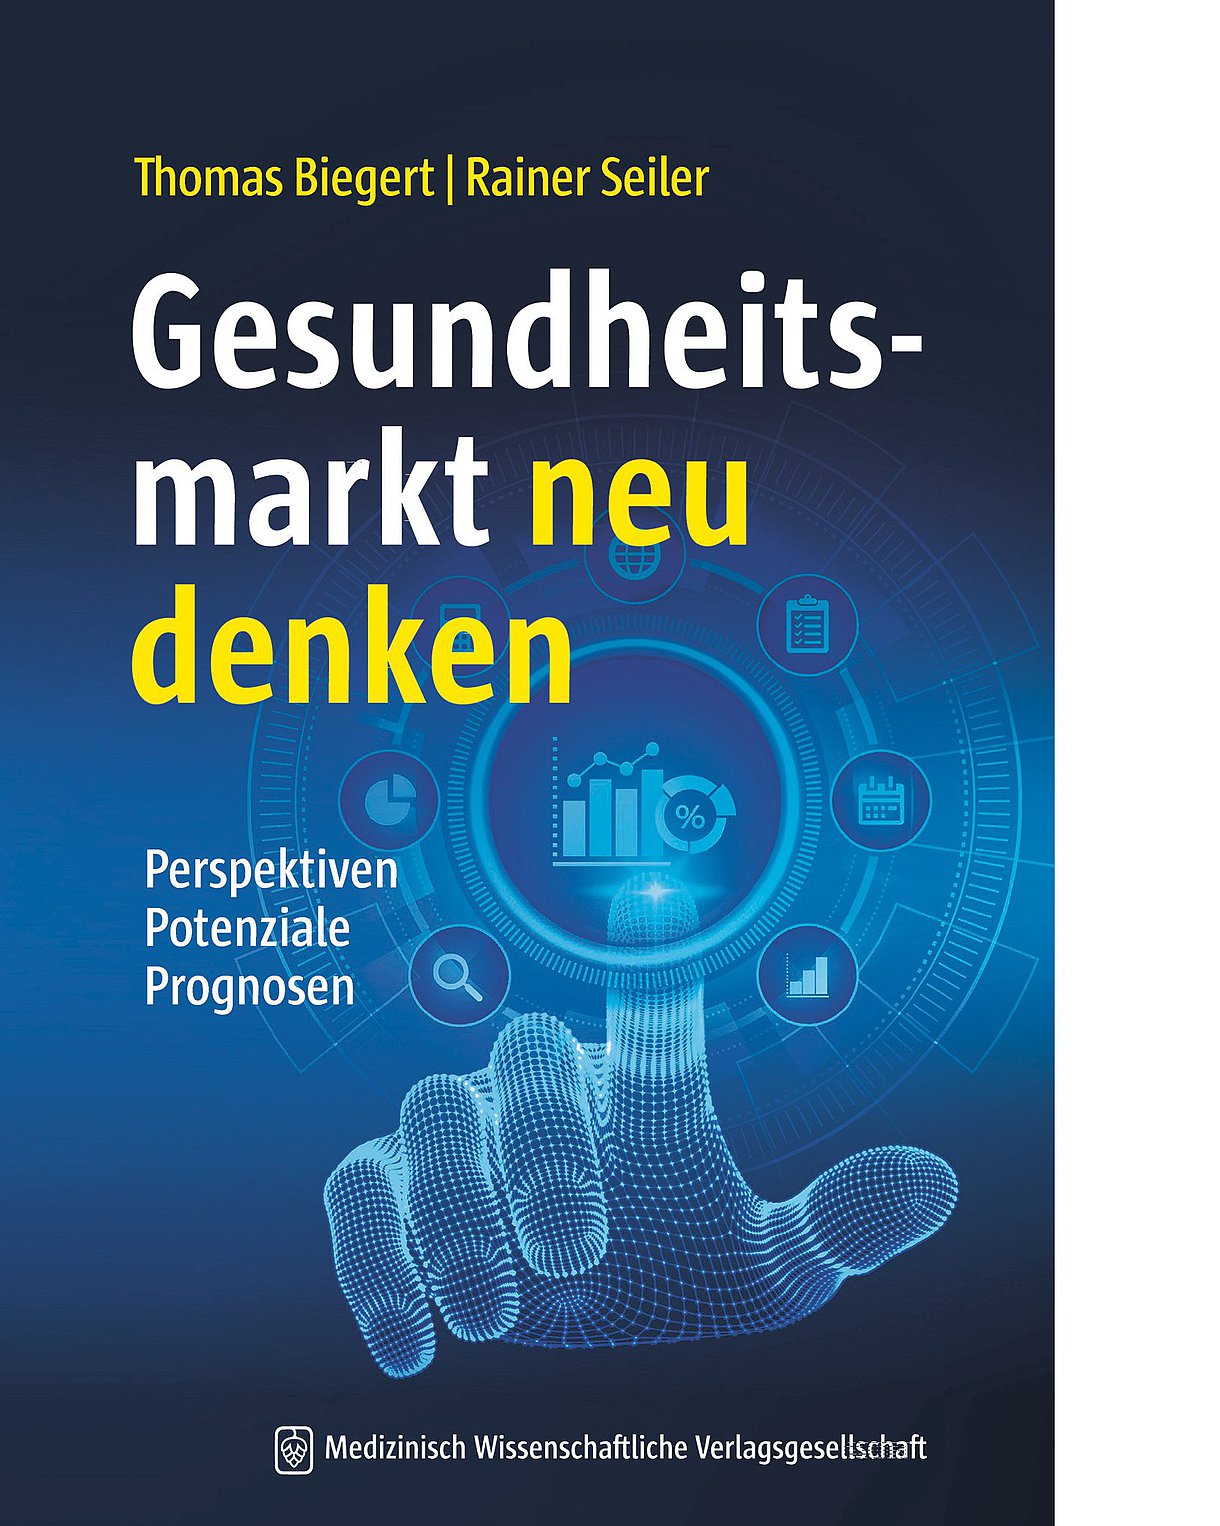 Foto: Buchcover "Gesundheitsmarkt neu denken" von Rainer Seiler und Thomas Biegert